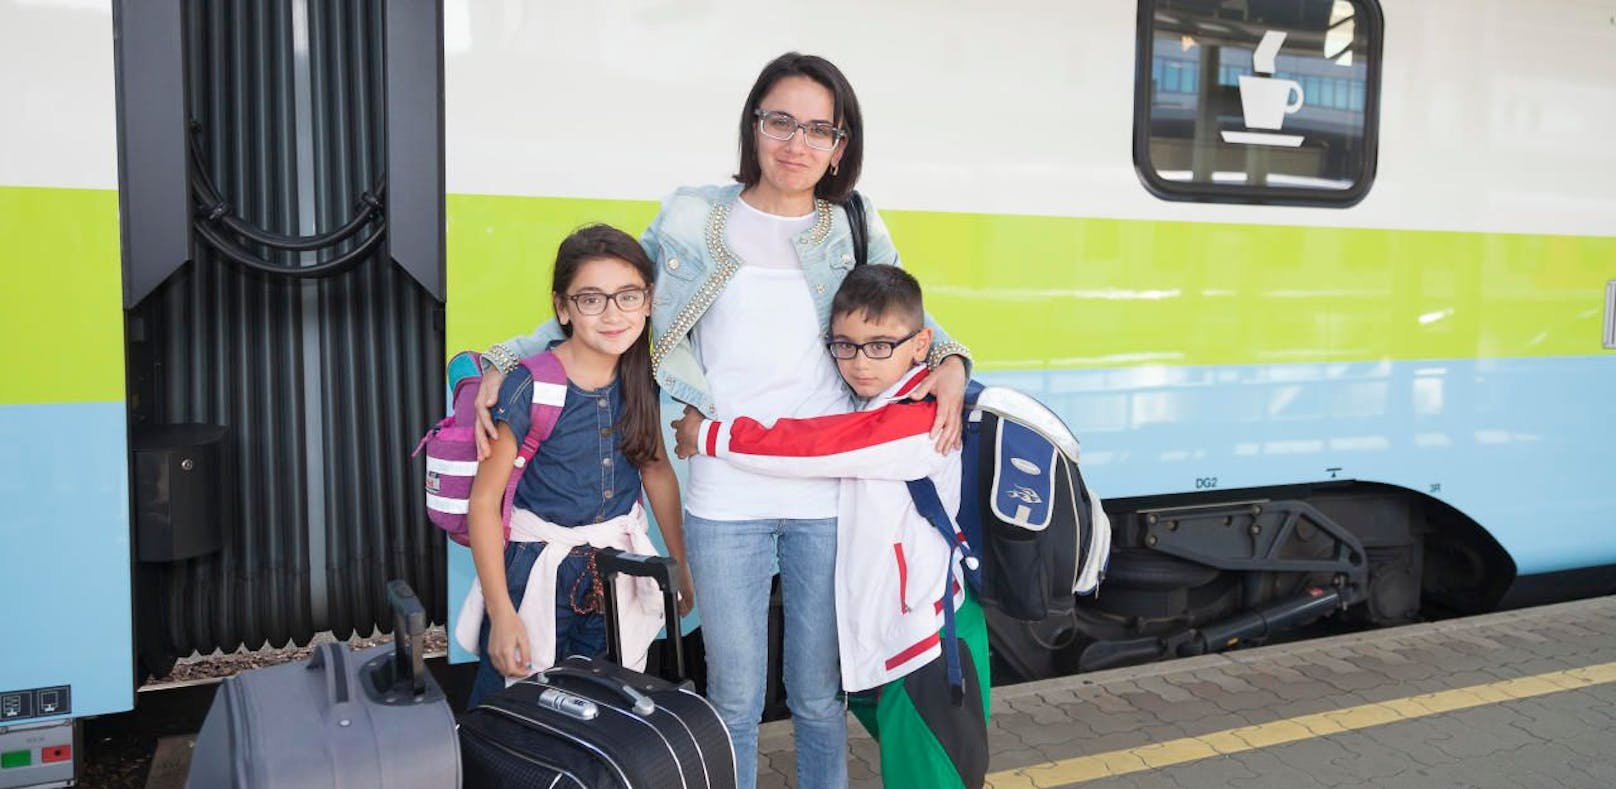 Narine und ihre beiden Kinder bei der Ankunft am Bahnhof. Jetzt wurde der Antrag auf humanitäres Bleiberecht abgelehnt.